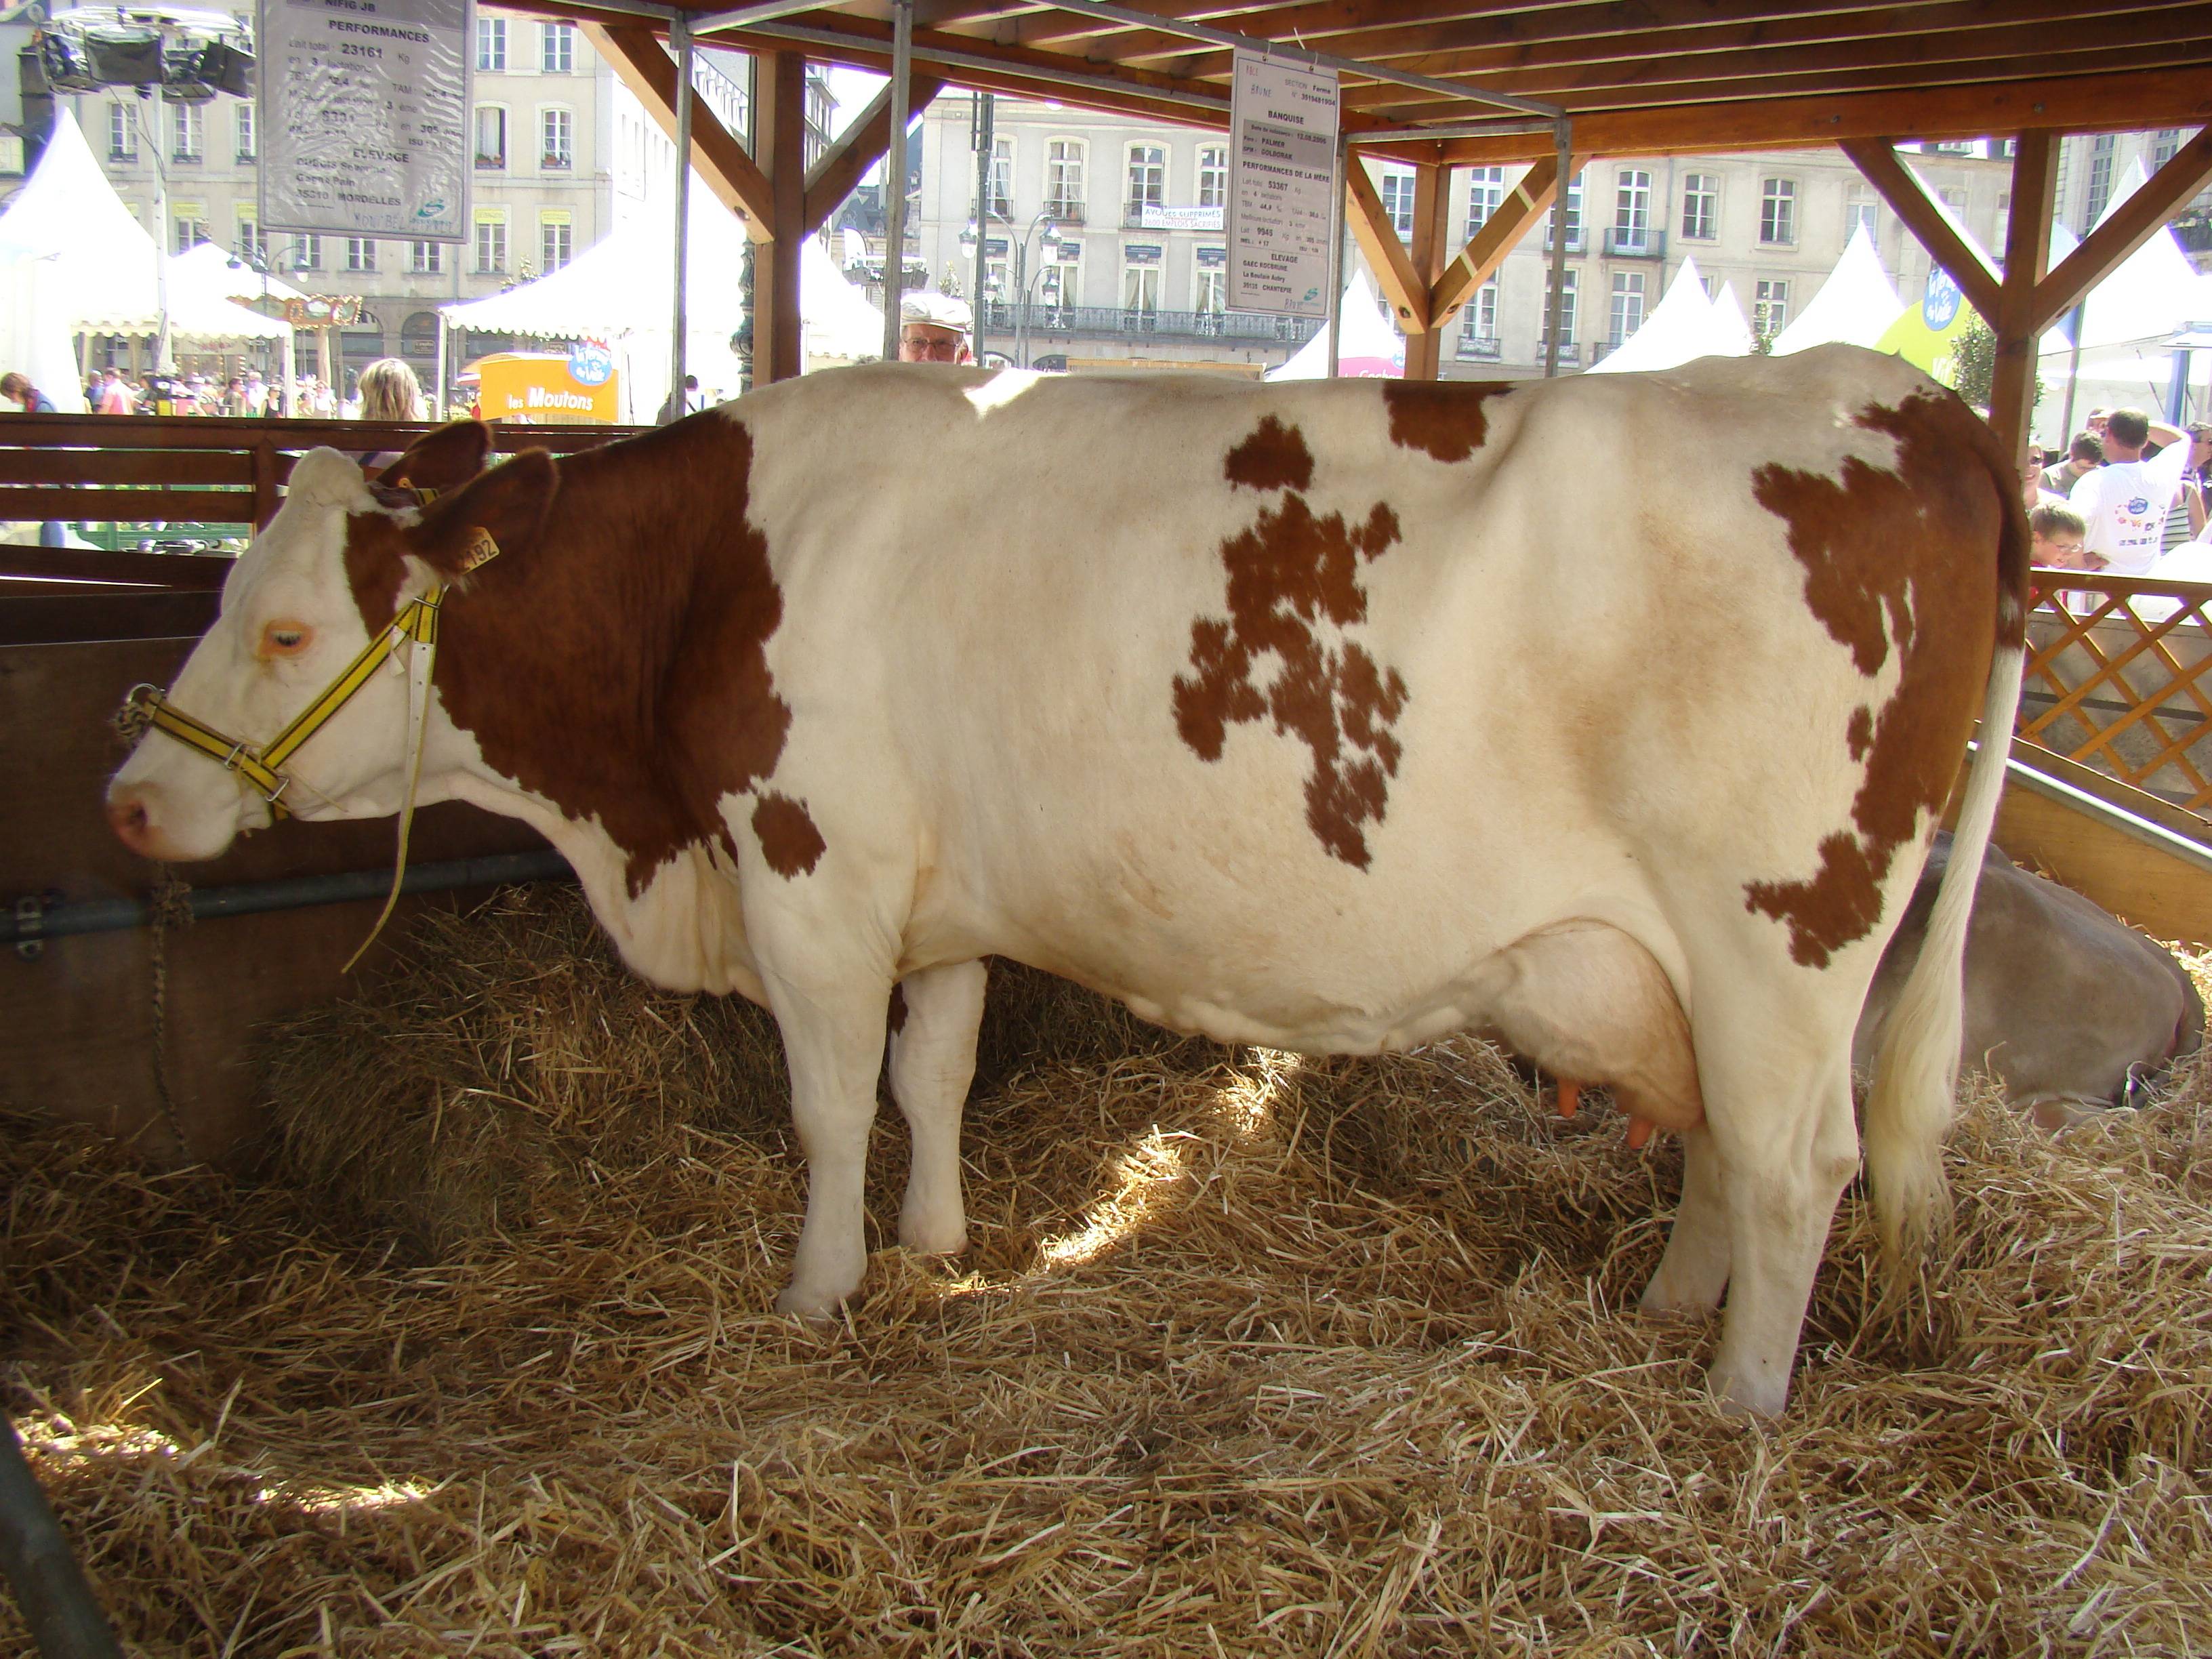 Описание и характеристика коров монбельярдской породы, их содержание